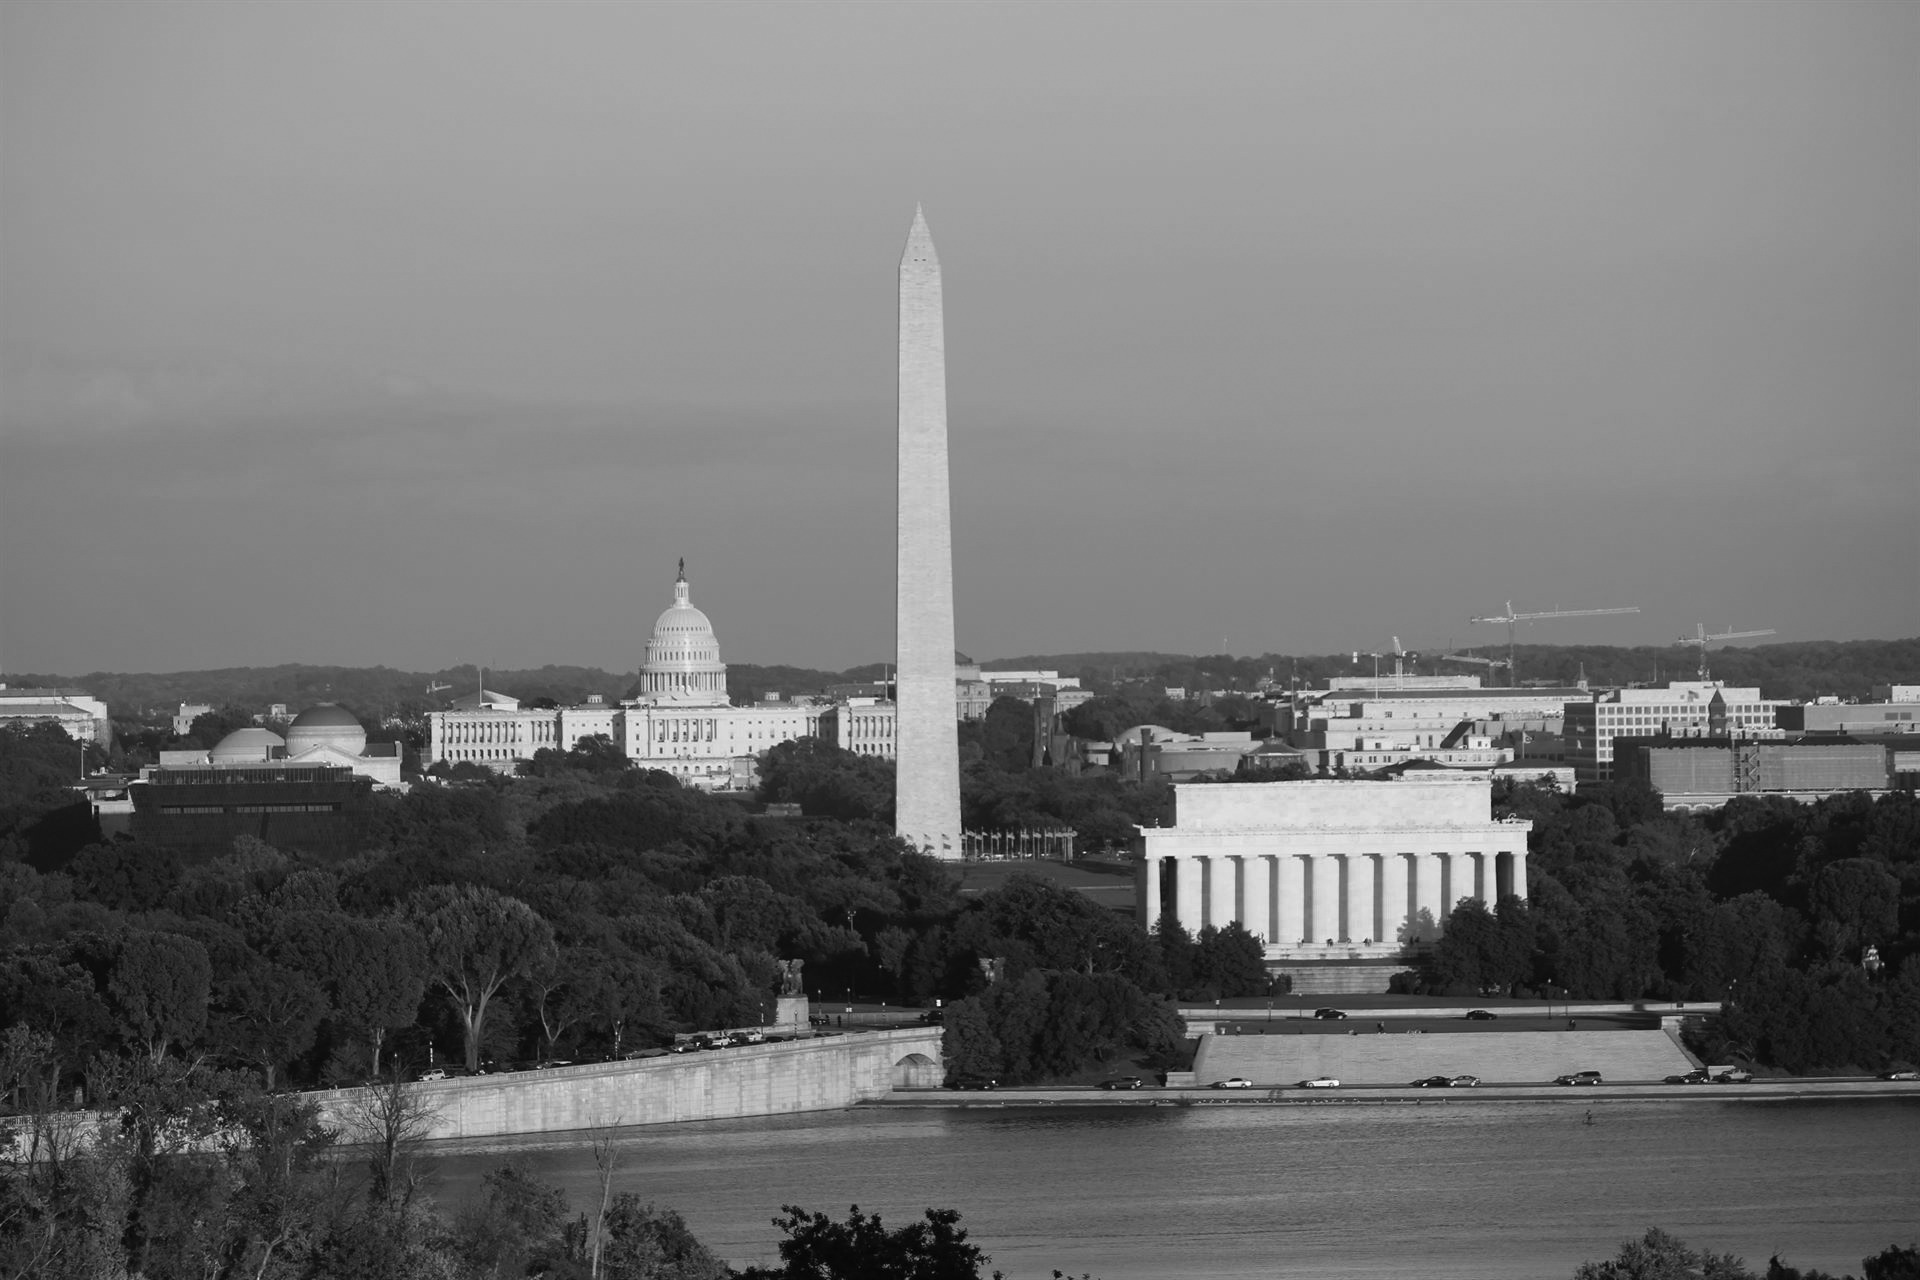 Image of the Washington monument in Washington D.C.